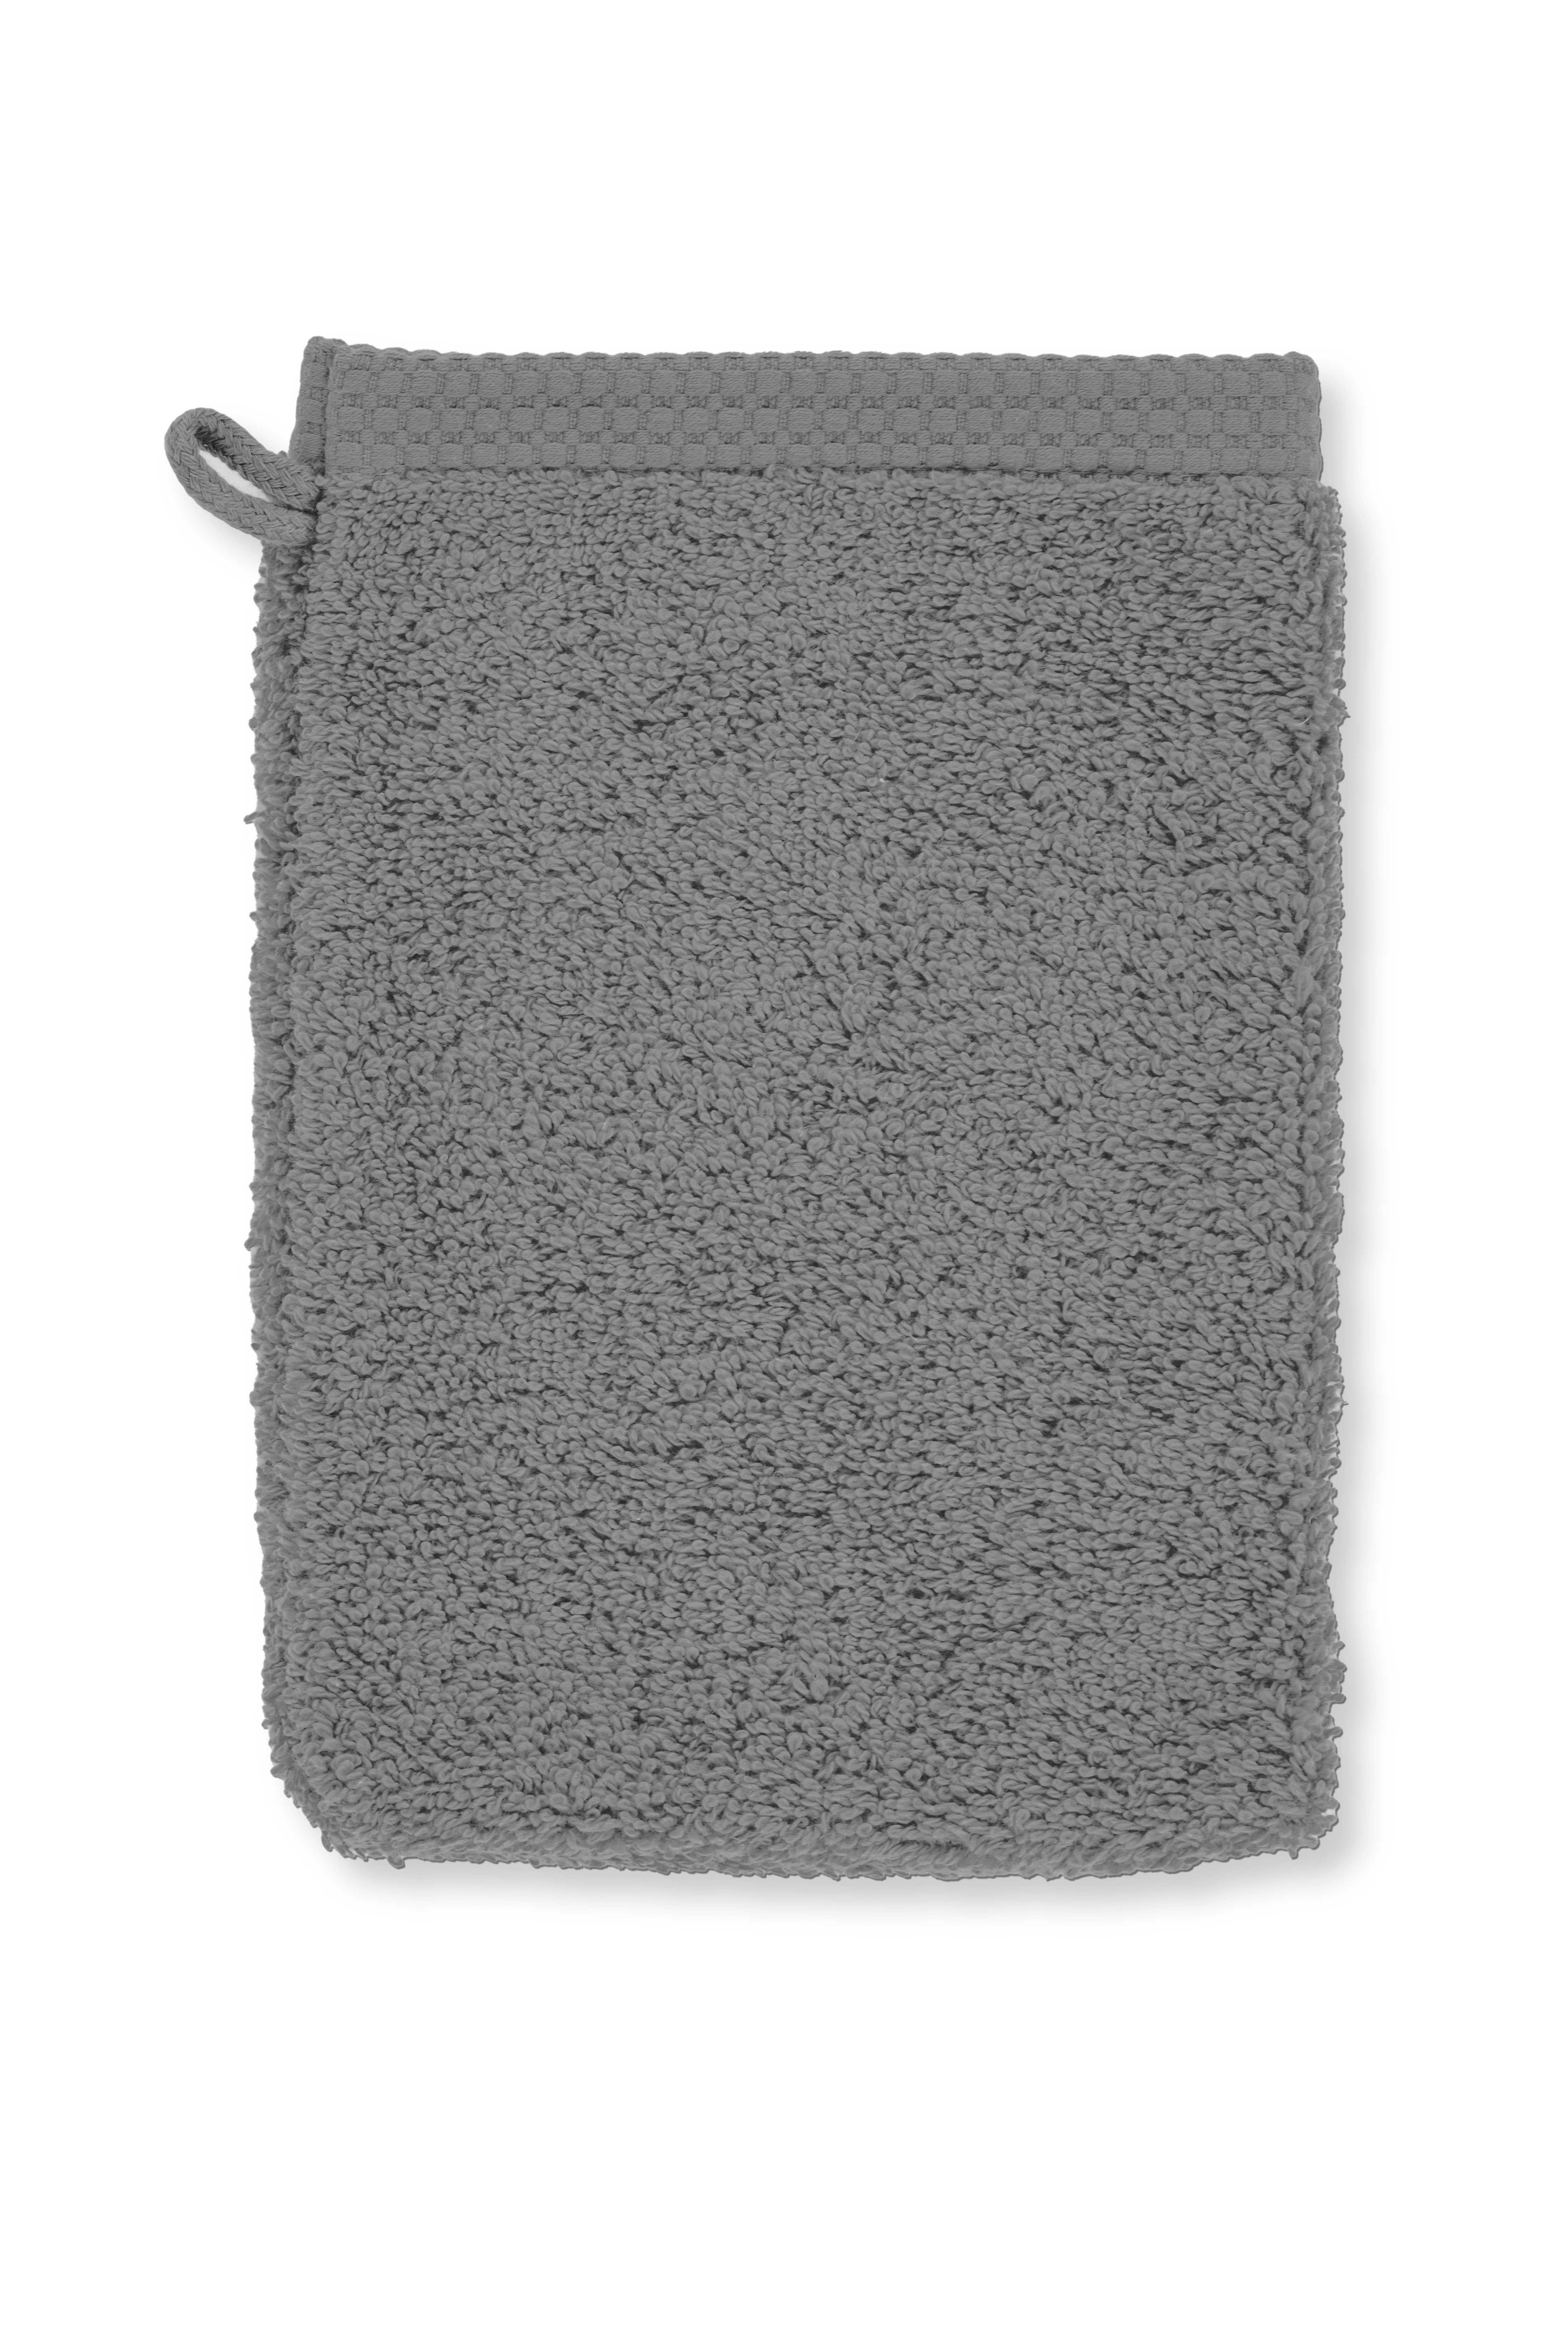 Washing glove DELUX 15x21cm - set/2, grey